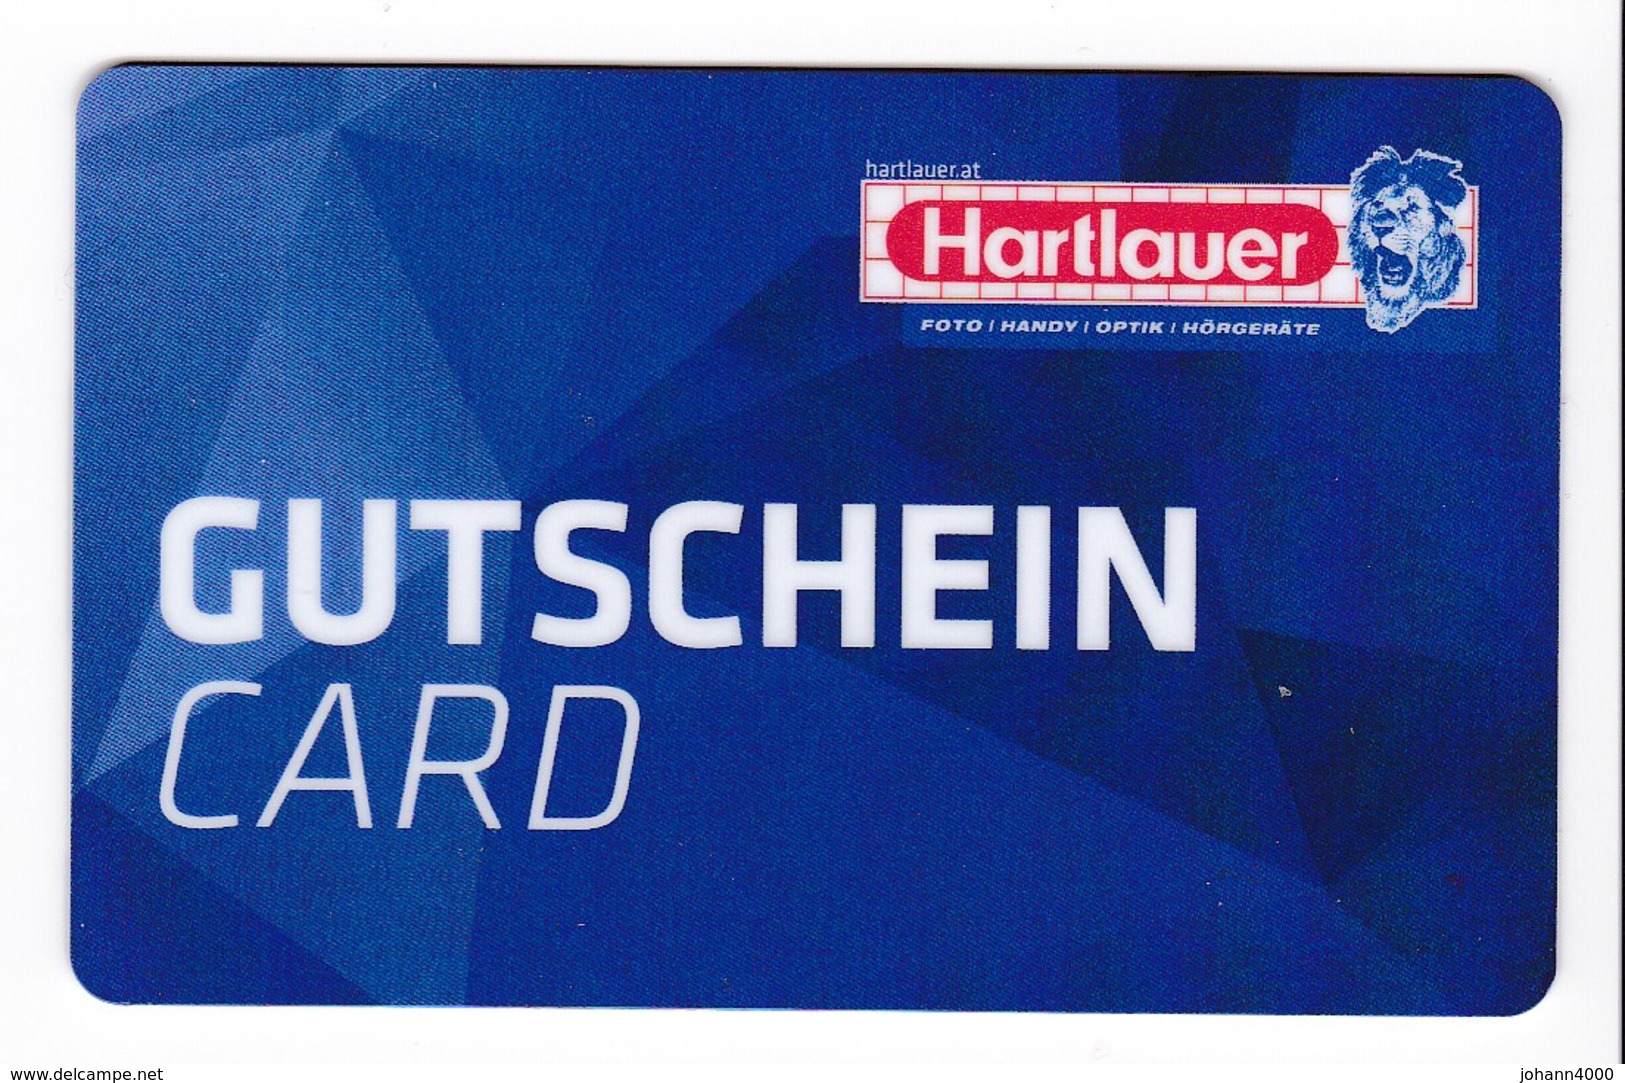 Gutschein Card Hartlauer Gift - Gift Cards